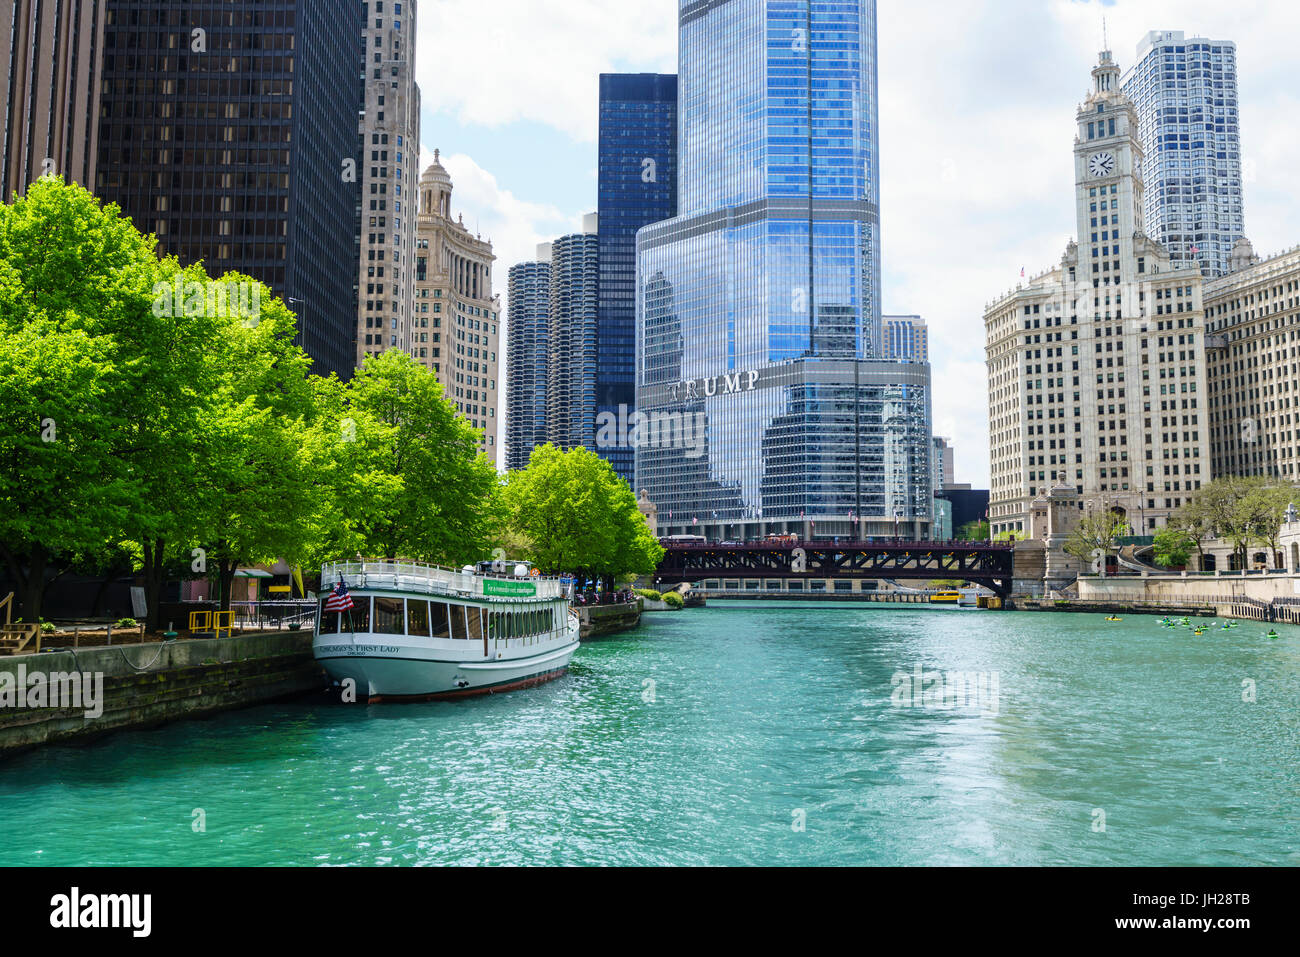 La rivière Chicago avec Trump Tower et Wrigley Building, Chicago, Illinois, États-Unis d'Amérique, Amérique du Nord Banque D'Images